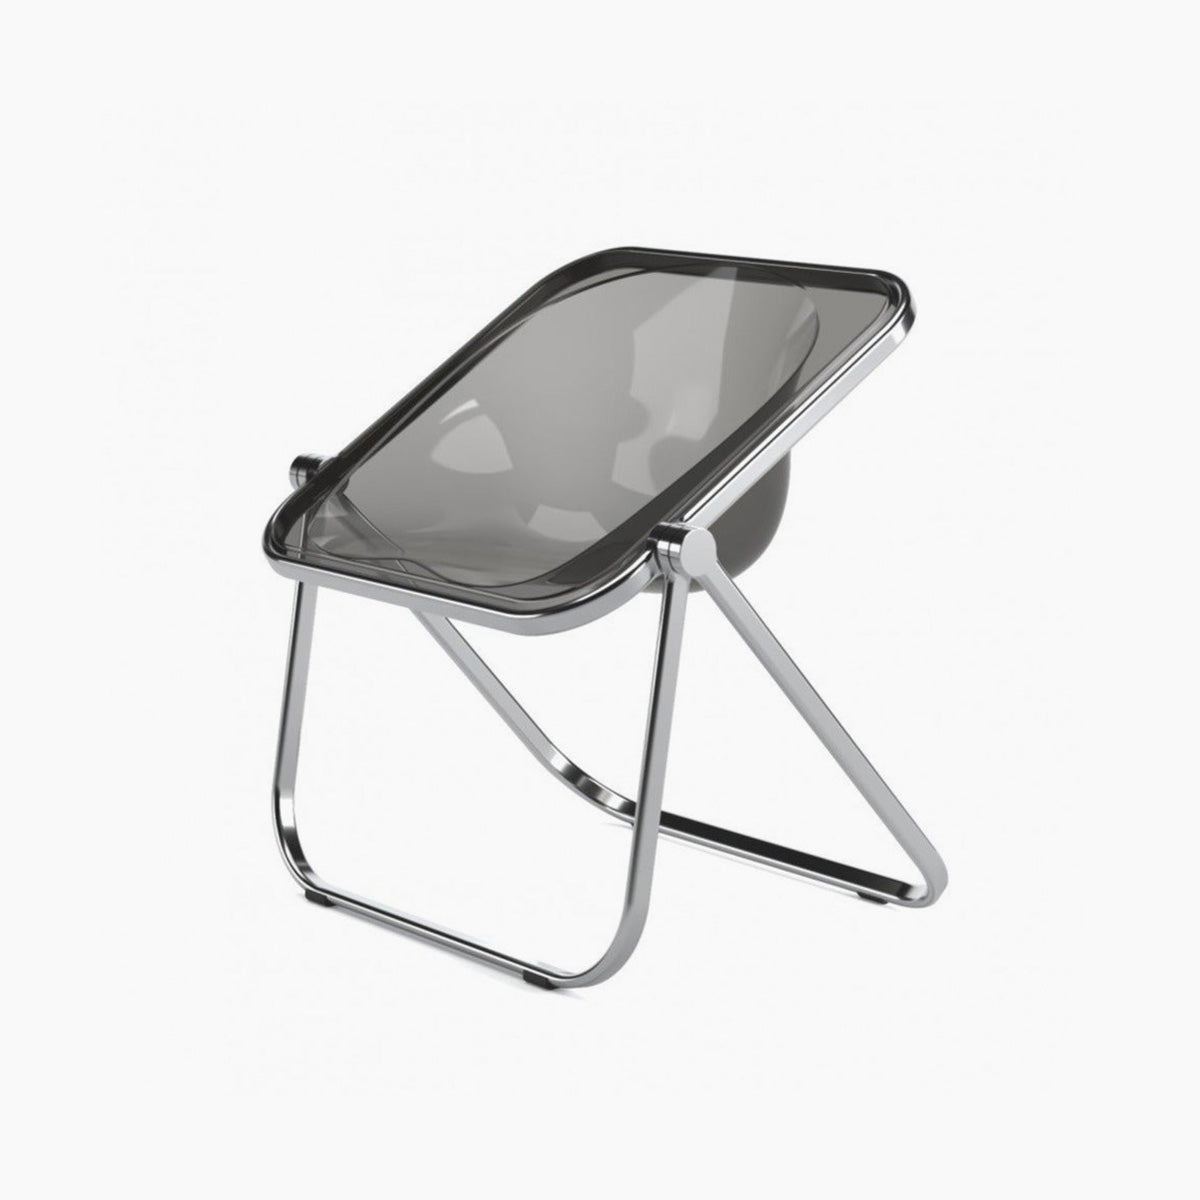 Plona Chair - Floor Model - Grade C